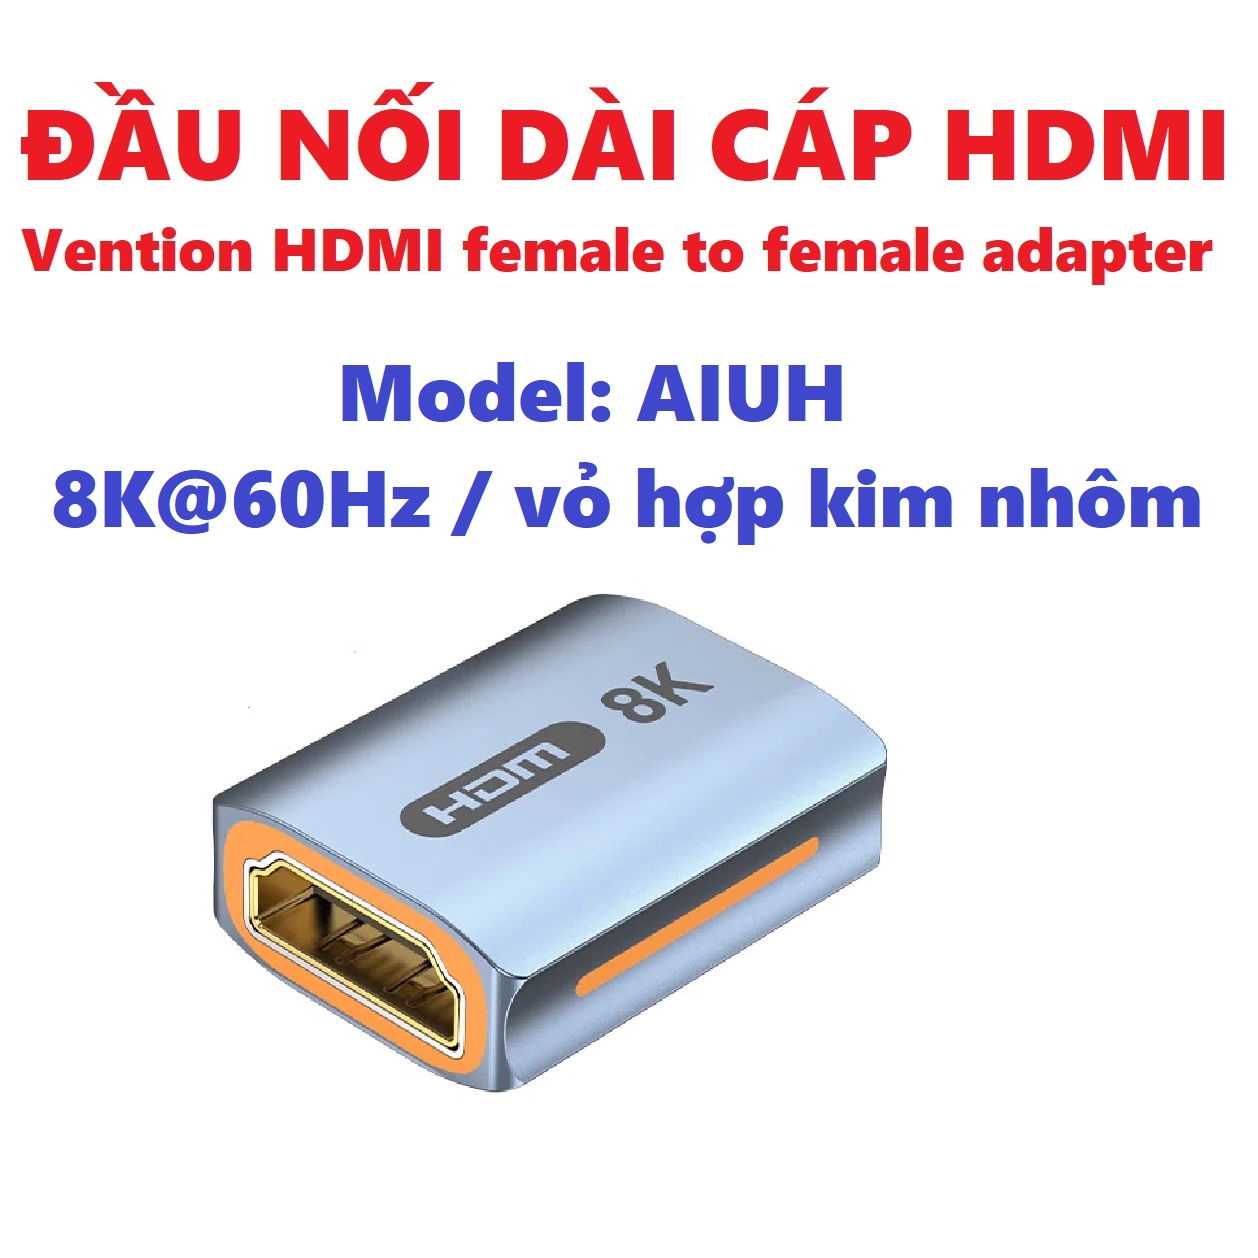 Đầu nối dài HDMI 2 cổng âm 8K / 4K Vention HDMI female to female adapter AIUH / AIRB _ Hàng chính hãng